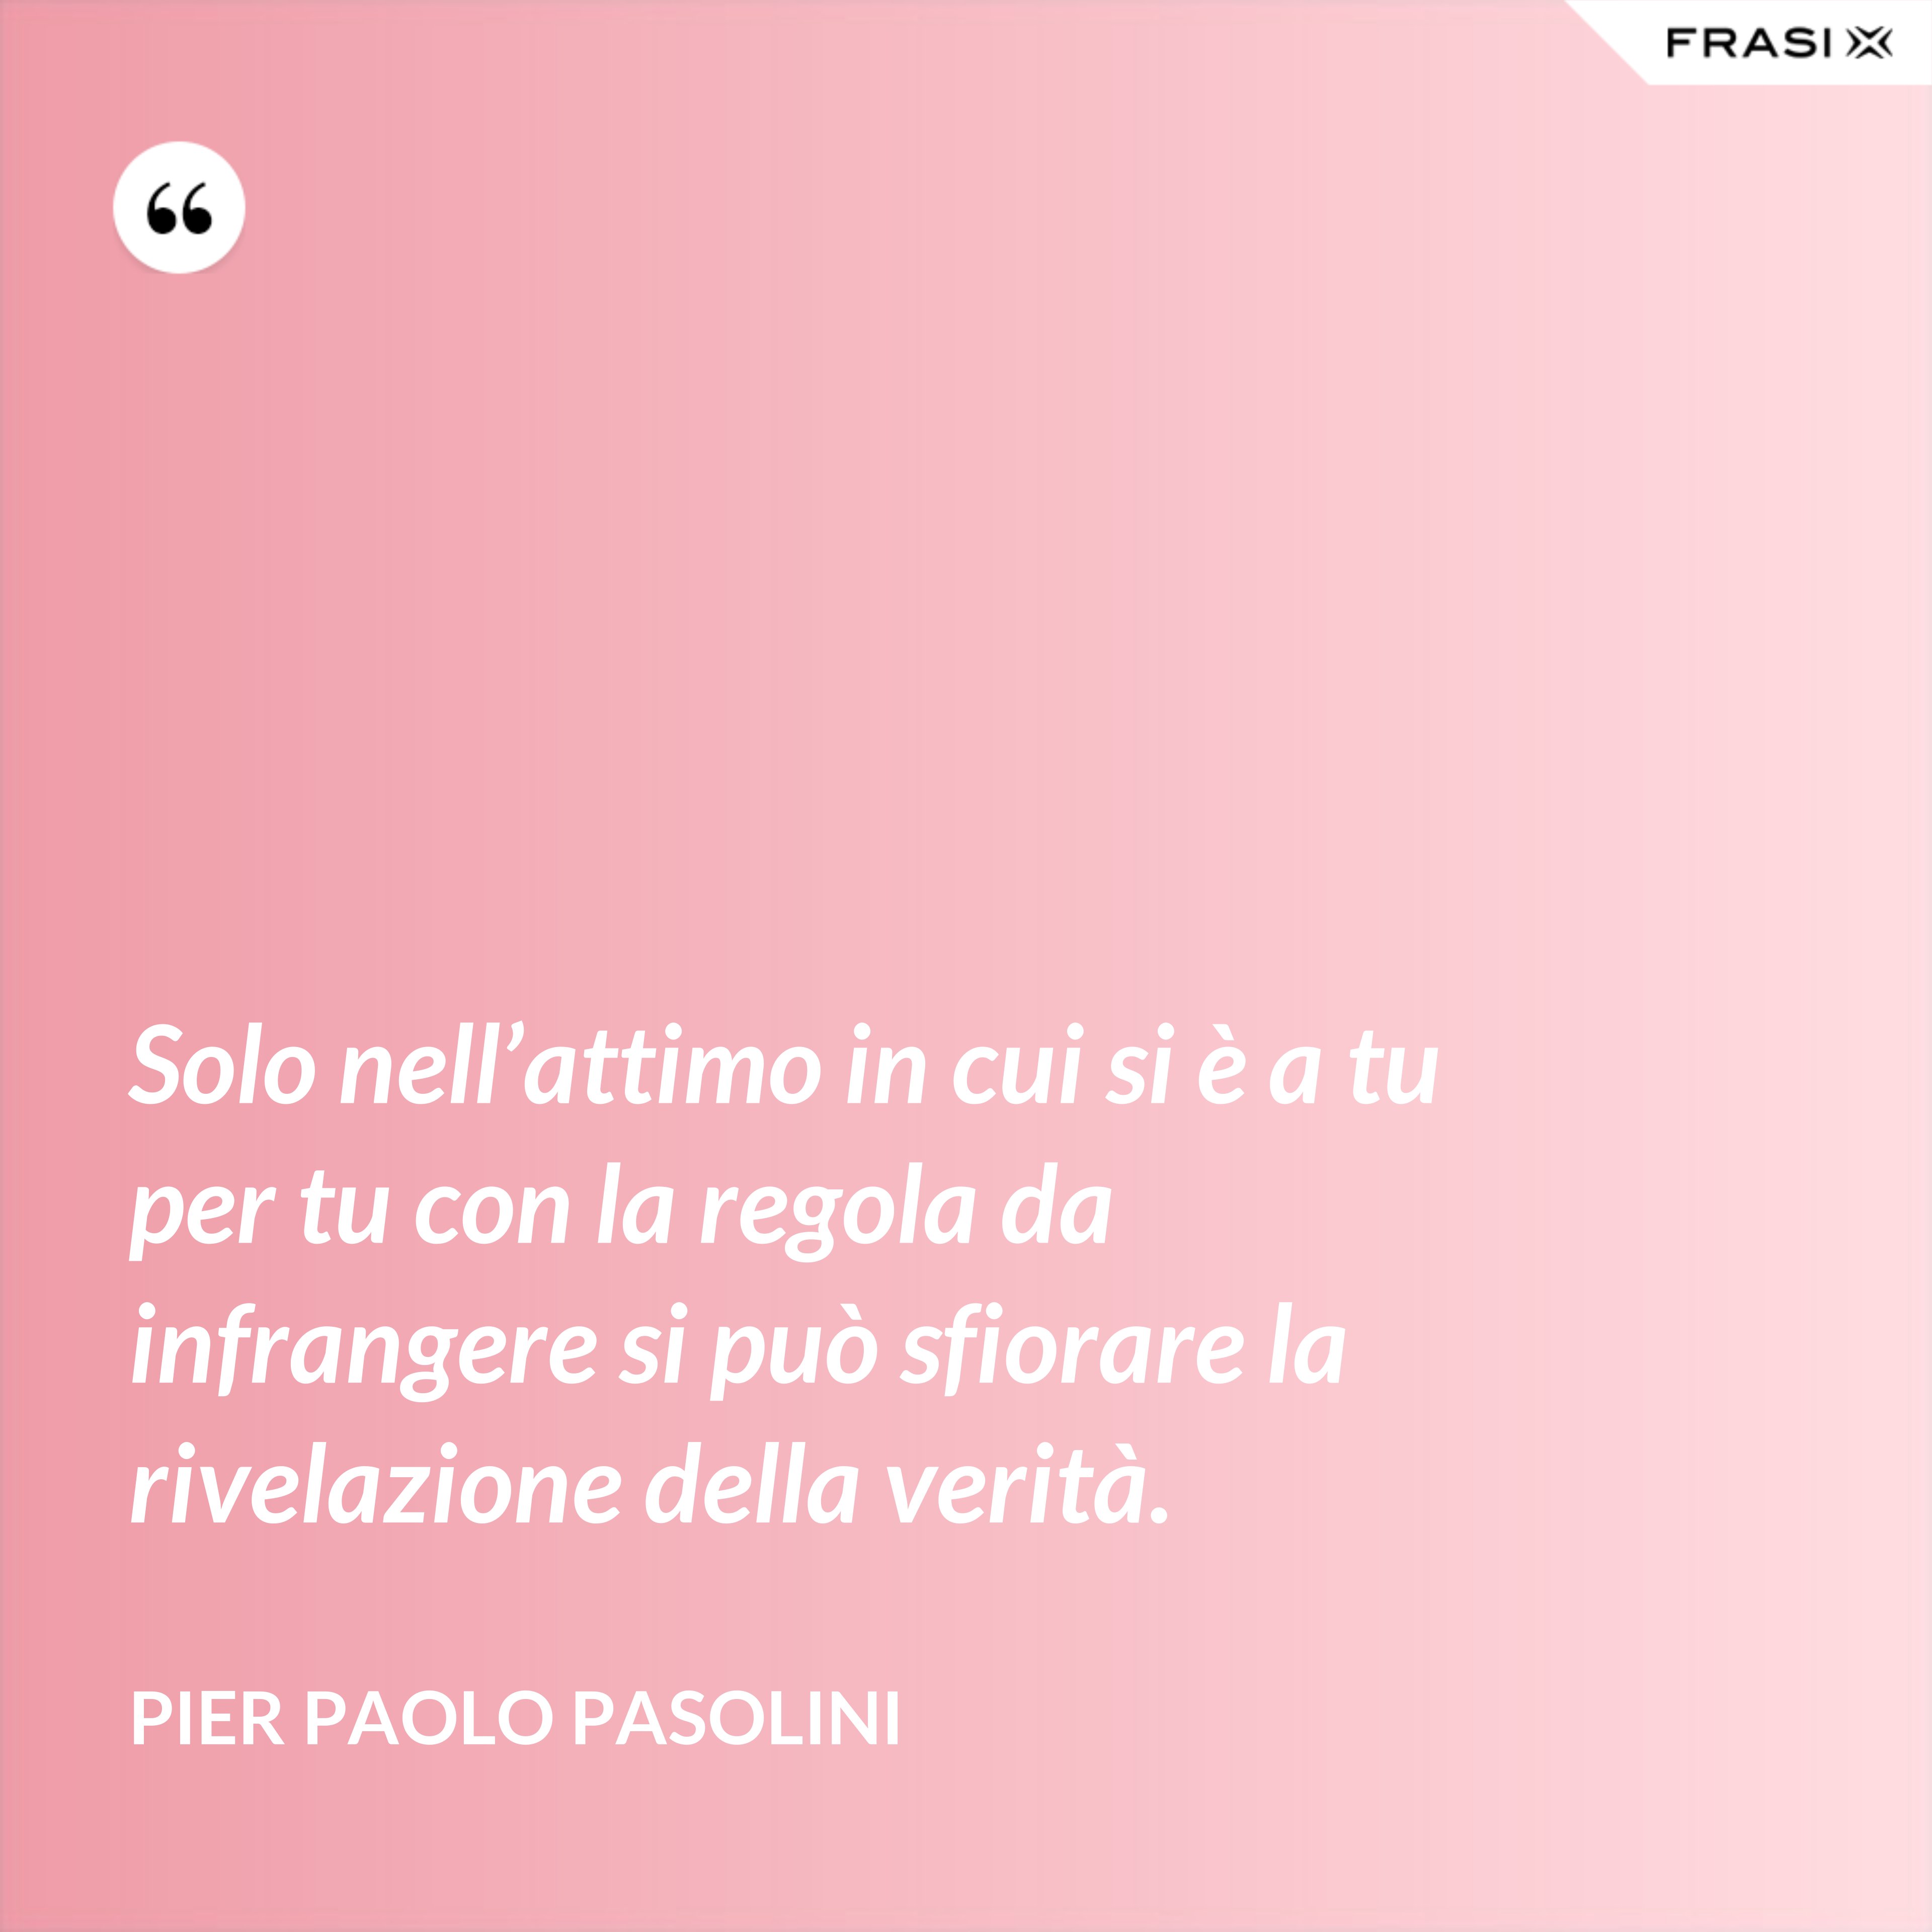 Solo nell’attimo in cui si è a tu per tu con la regola da infrangere si può sfiorare la rivelazione della verità. - Pier Paolo Pasolini